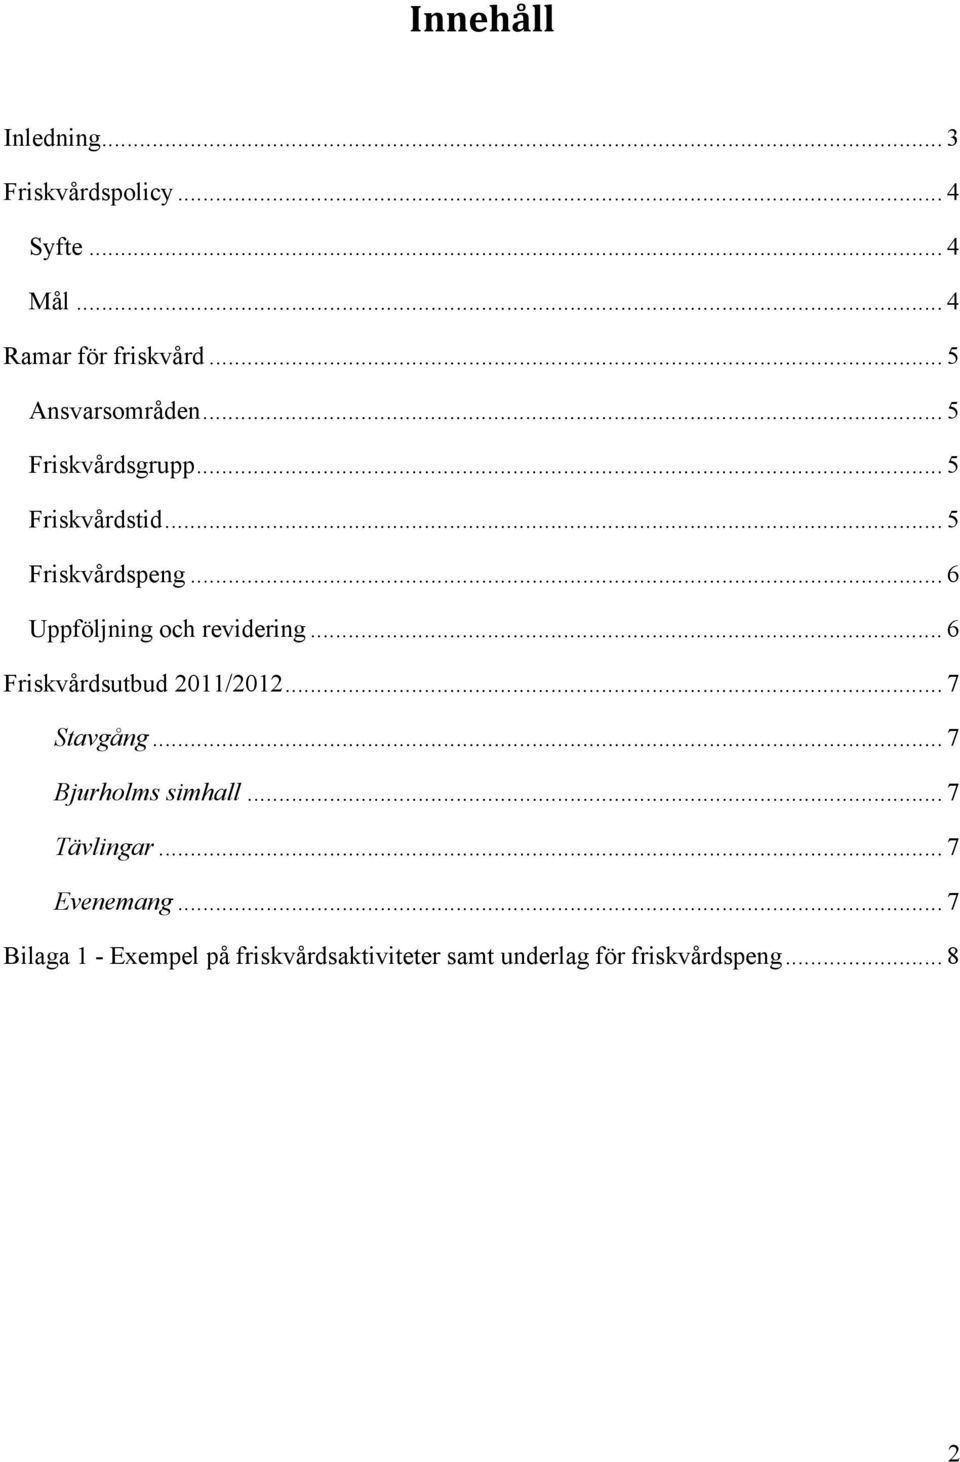 .. 6 Uppföljning och revidering... 6 Friskvårdsutbud 2011/2012... 7 Stavgång.